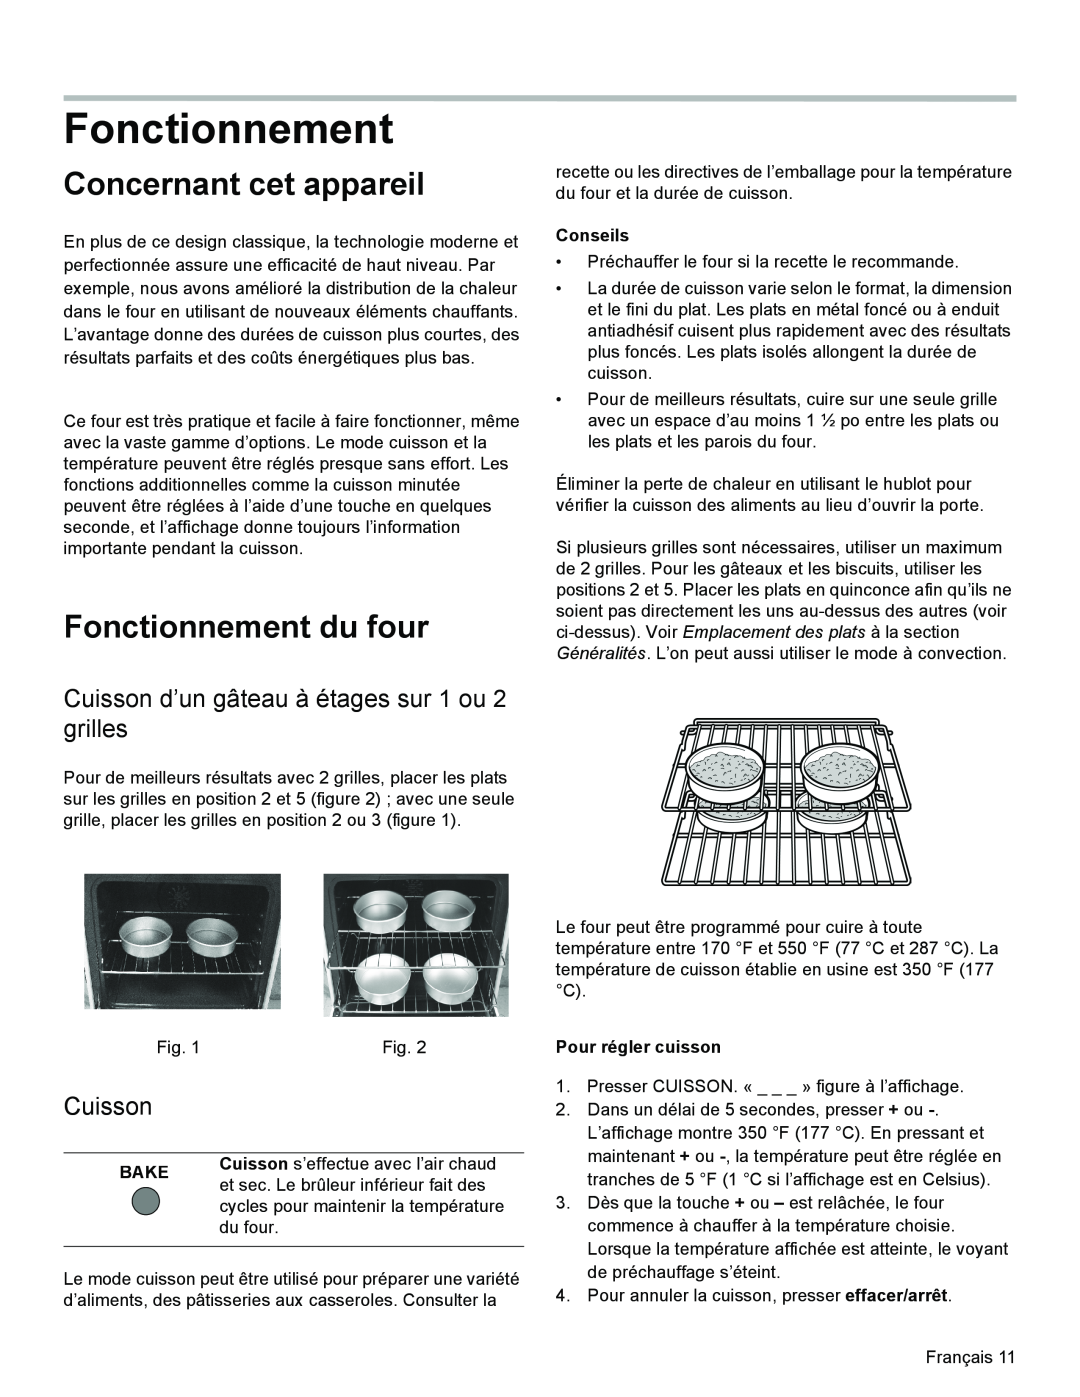 Bosch Appliances HES3053U manual Concernant cet appareil, Fonctionnement du four, Cuisson, Conseils, Bake 